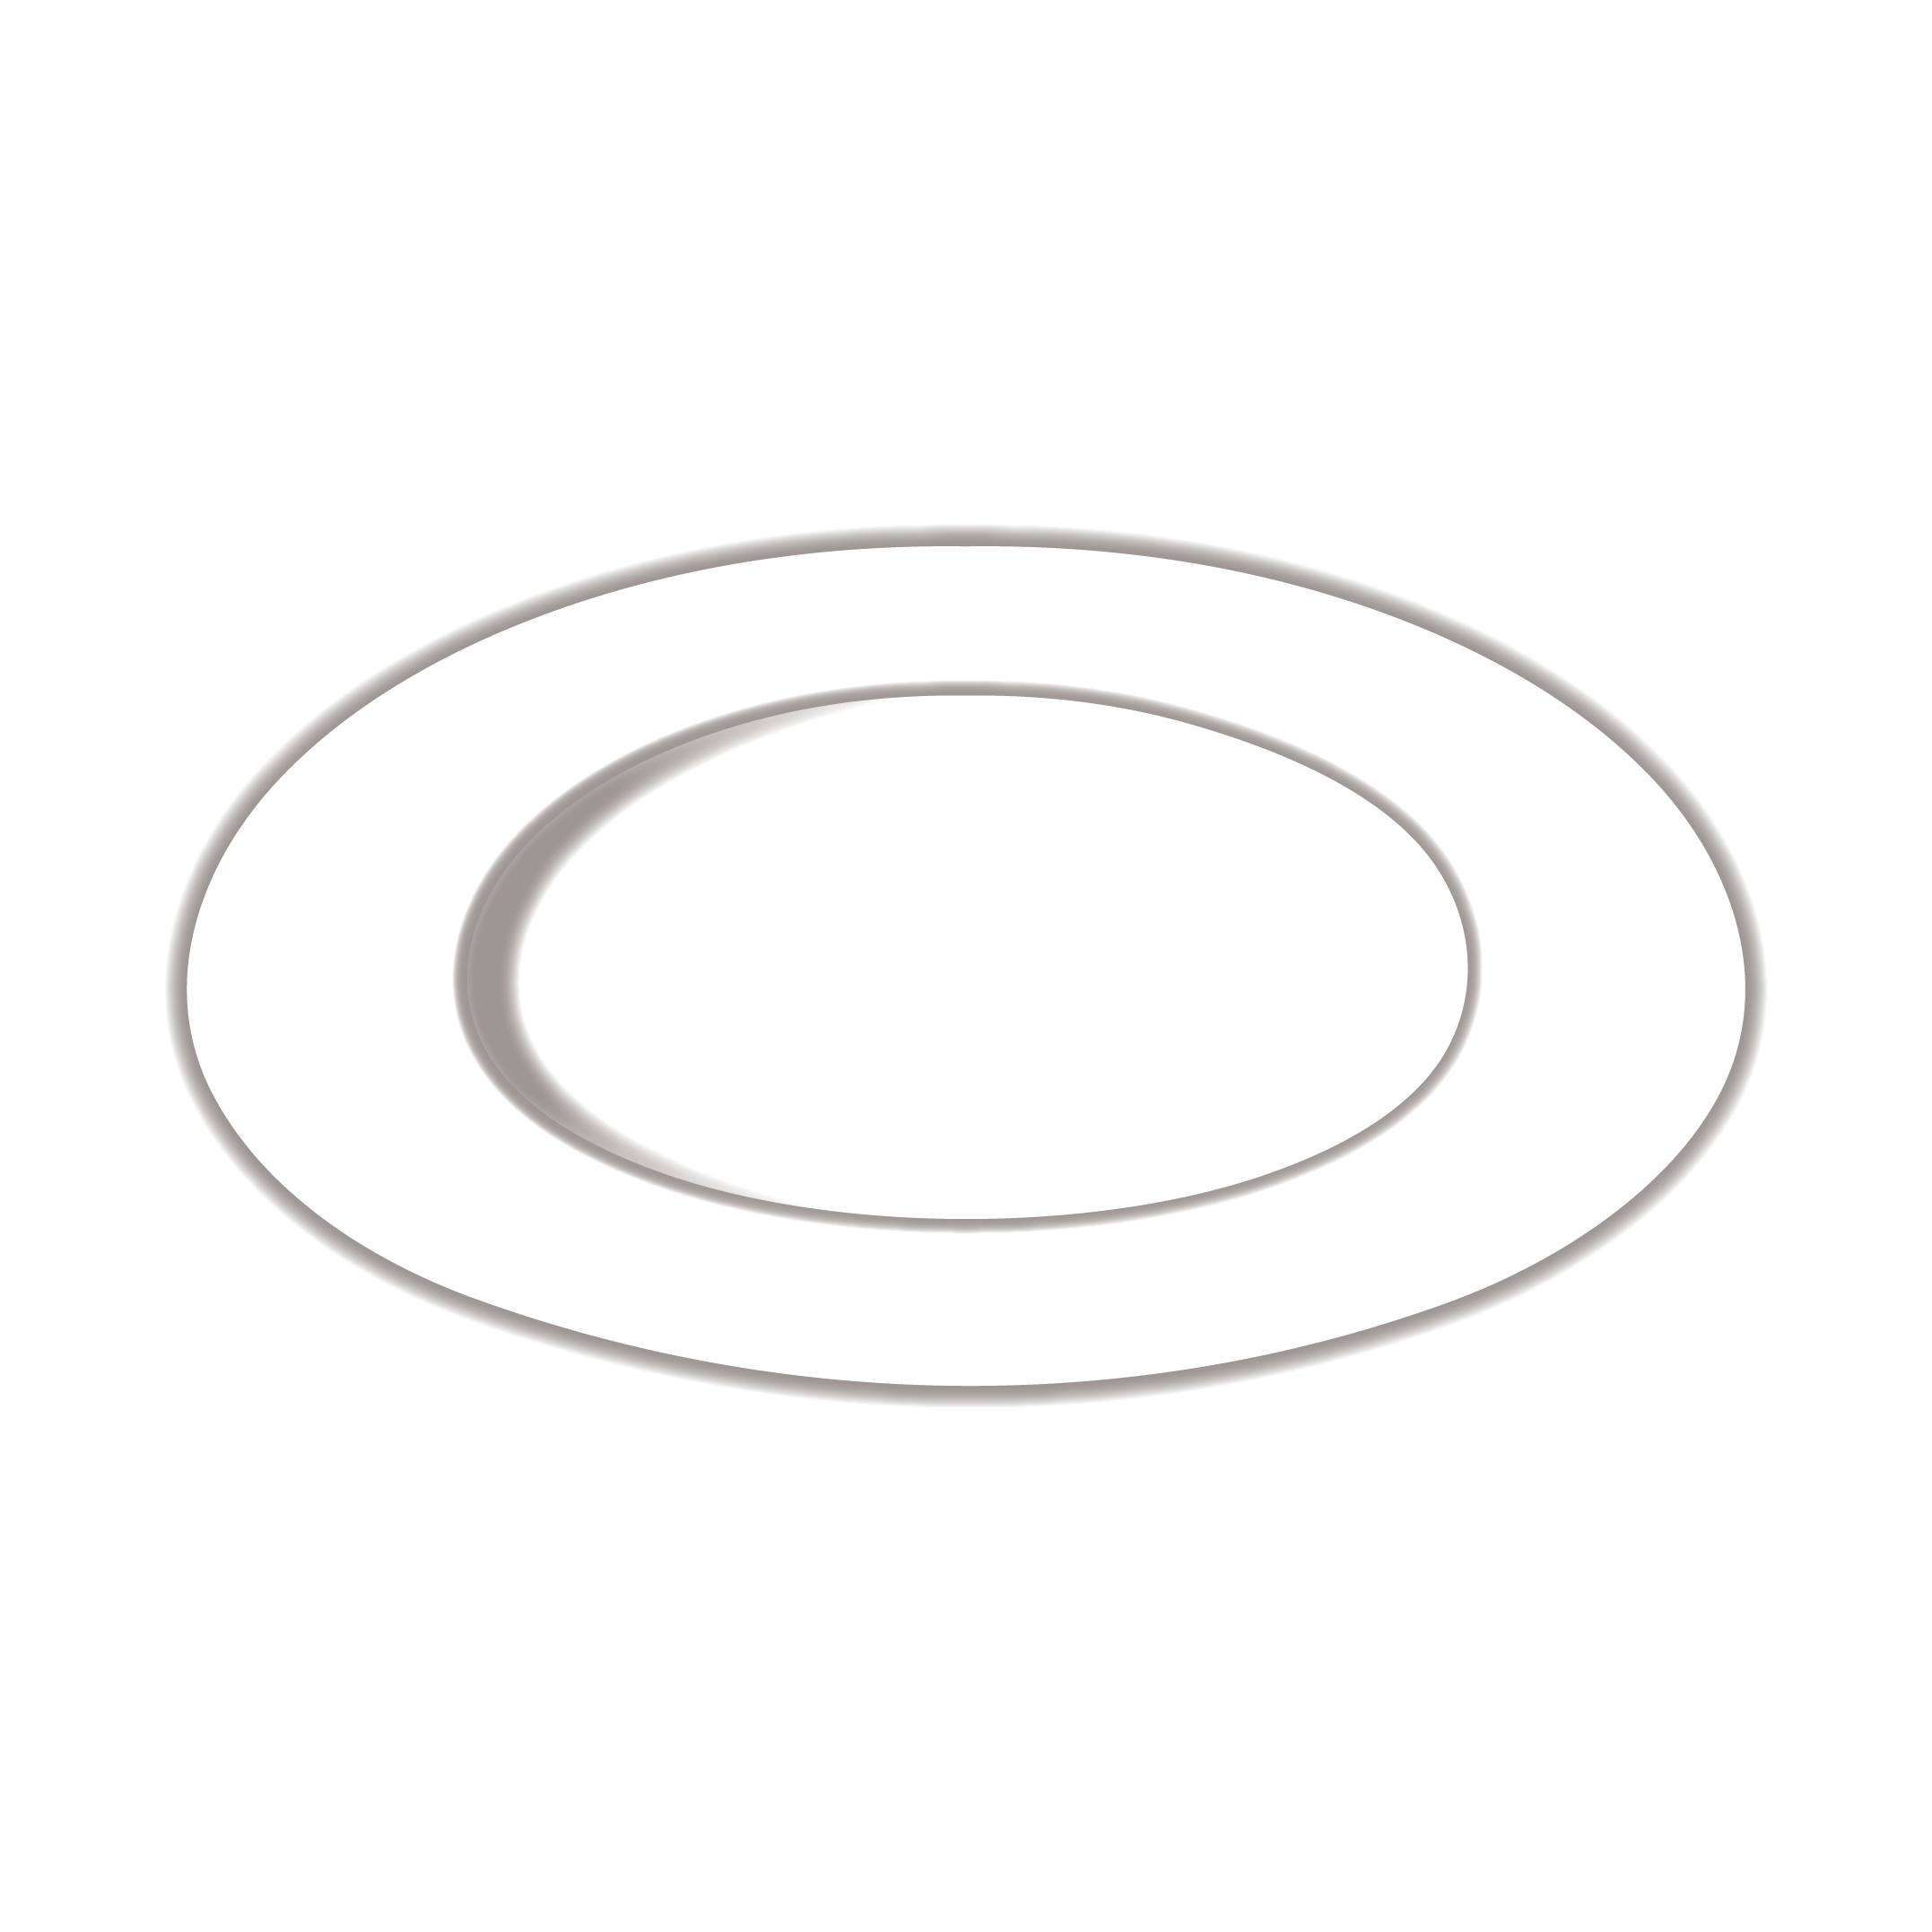 白いお皿のイラスト 商用フリー 無料 のイラスト素材なら イラストマンション